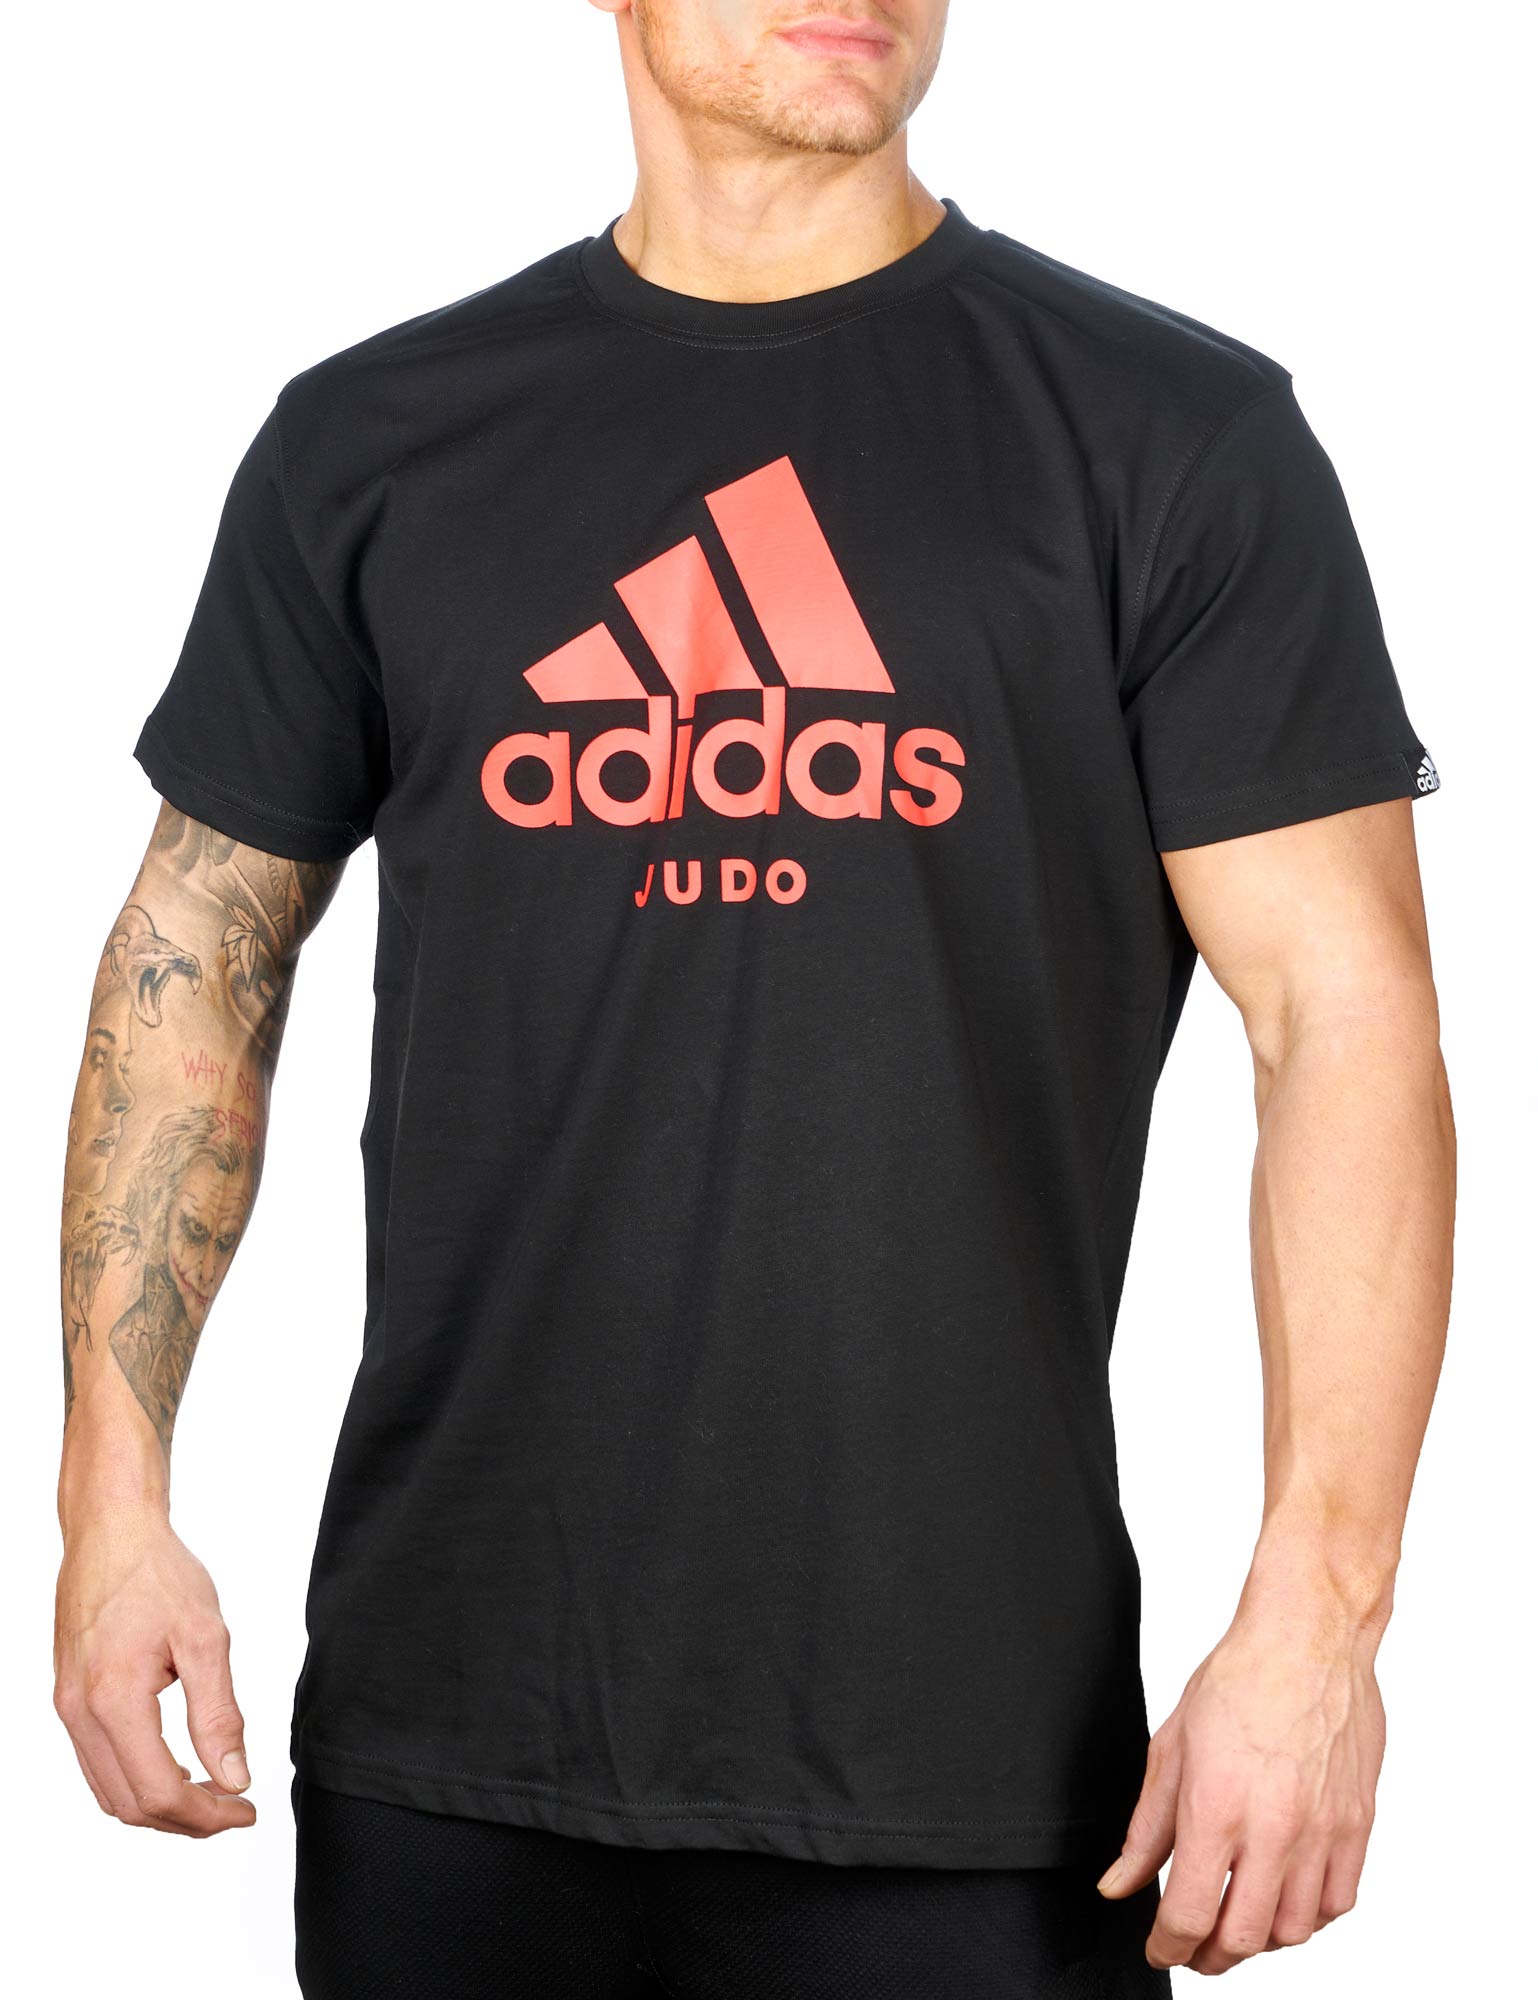 adidas Community line T-Shirt Judo "Performance" black/shock red, ADICTJ